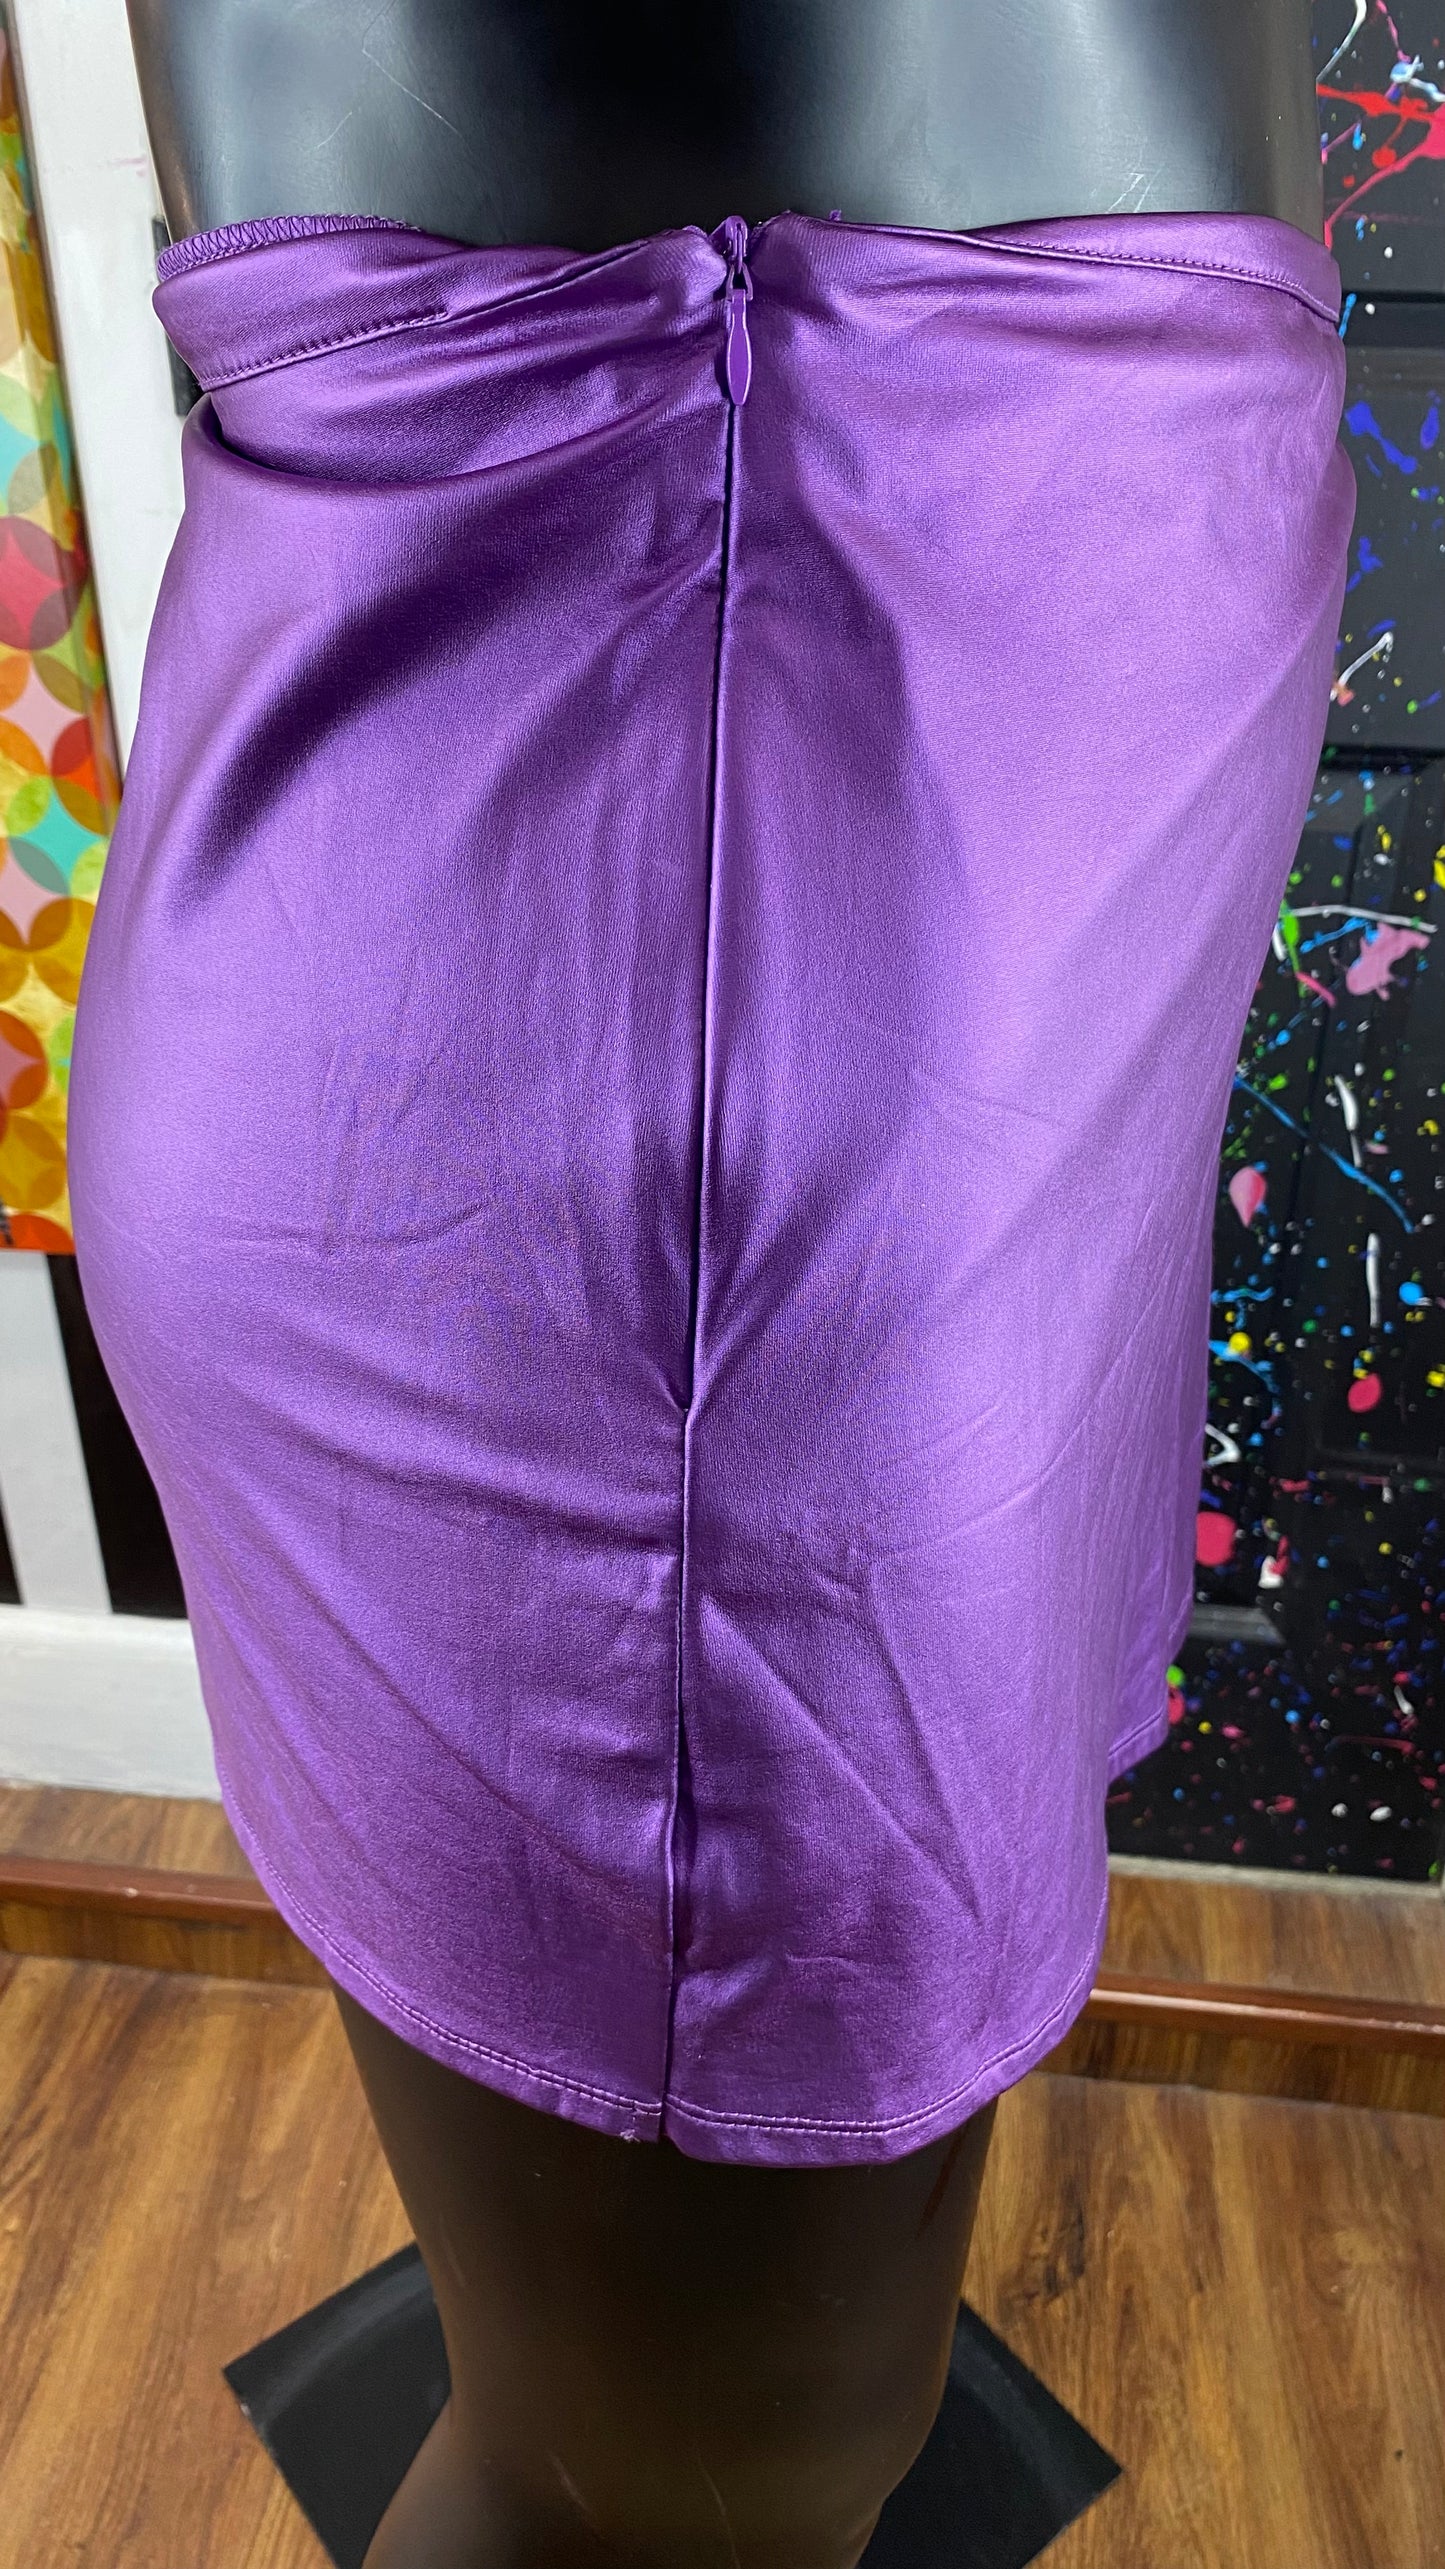 Purple Shining Skort Shorts